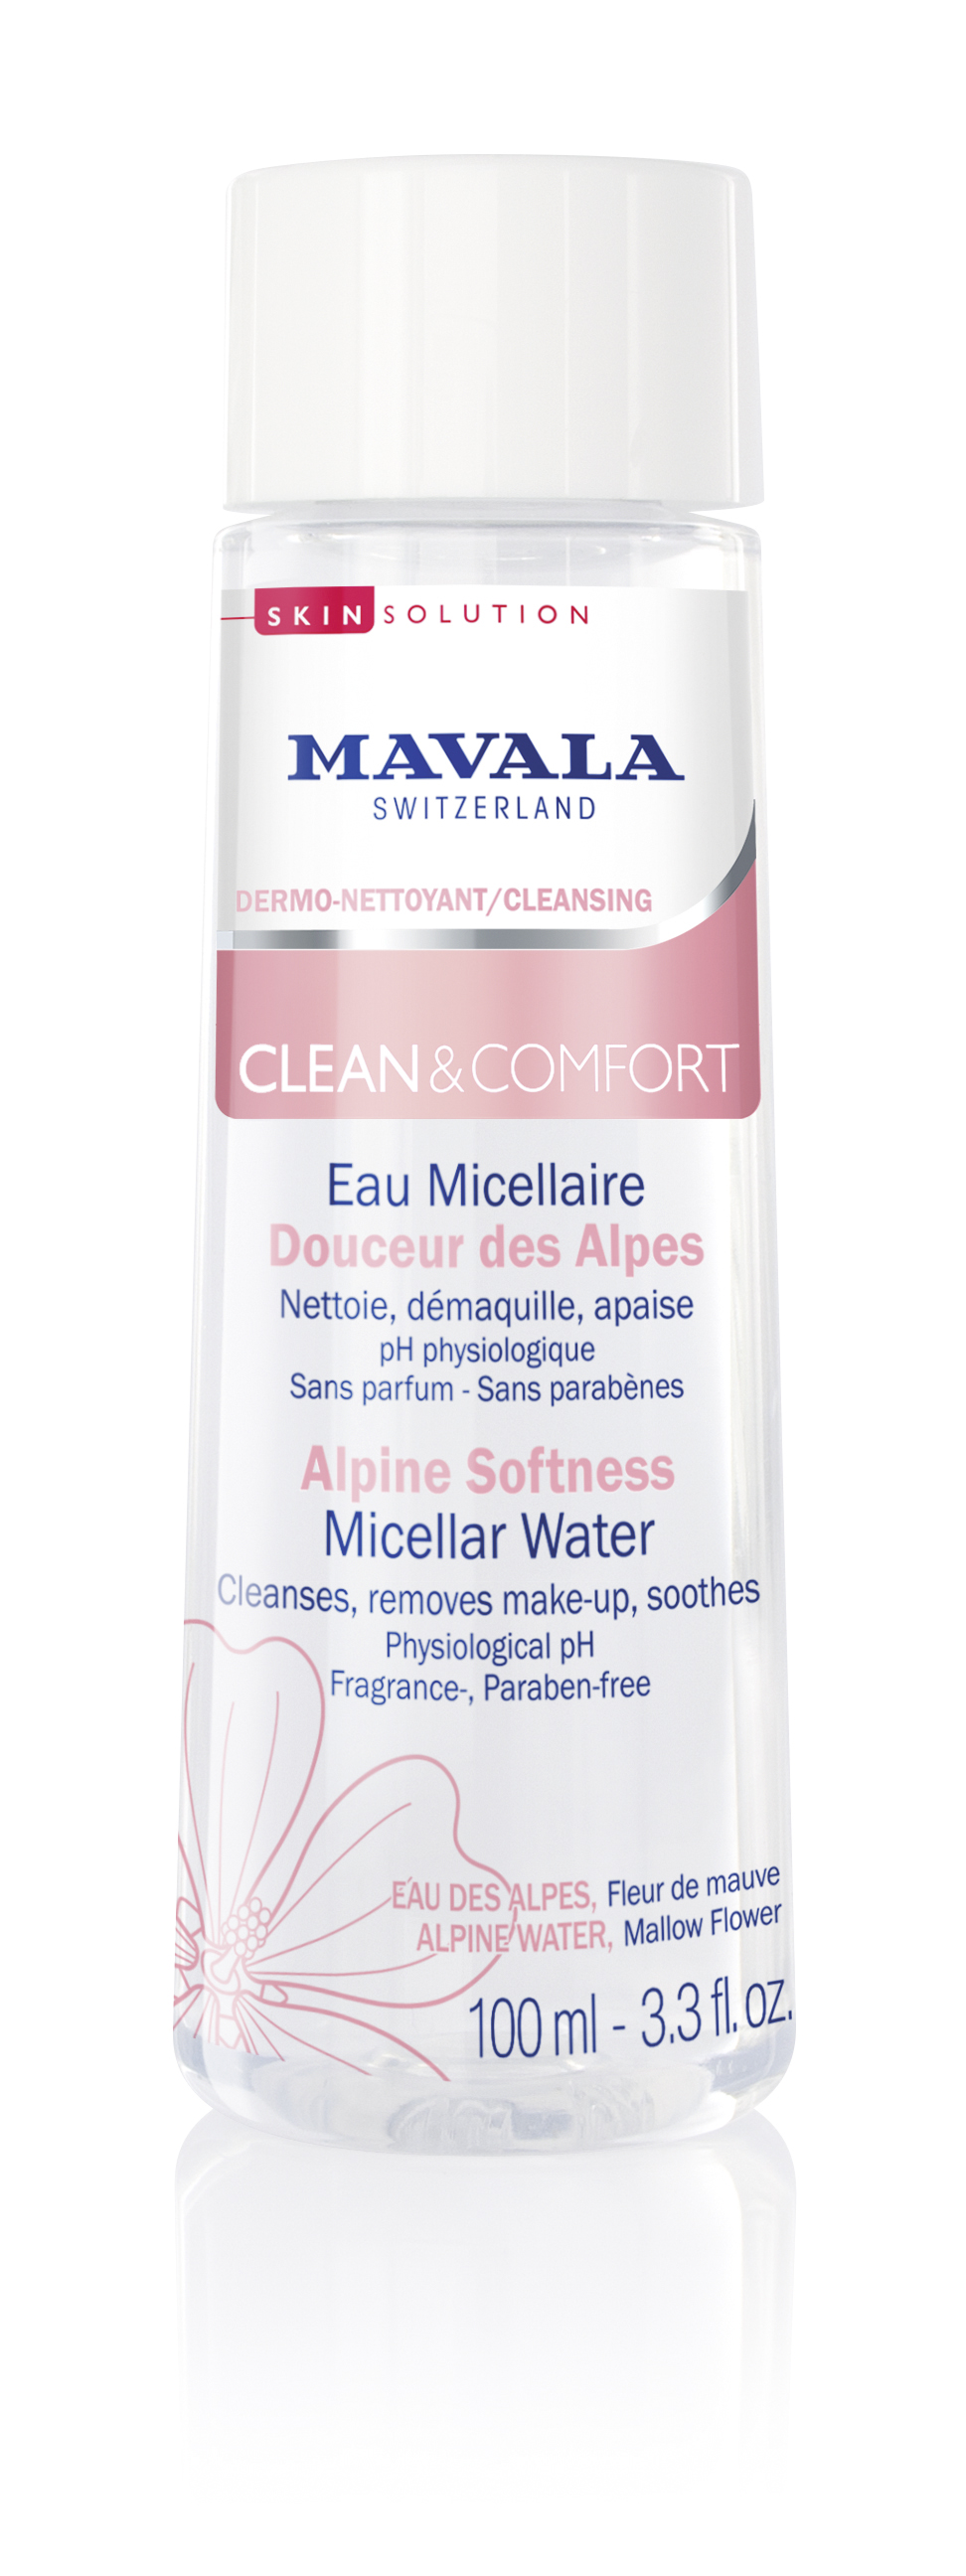 CLEAN & COMFORT - Sanftes Alpen-Mizellarwasser - Reinigt, entfernt Make-up und beruhigt   - Vegan